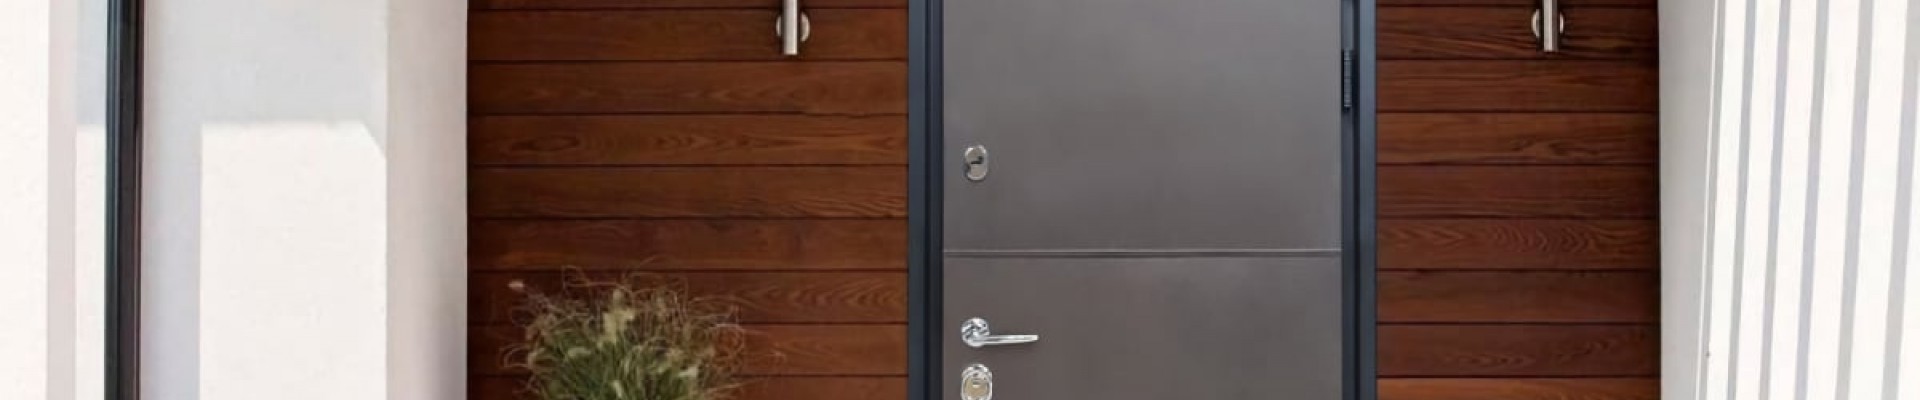 Входная дверь Bulat: Как выбрать идеальную входную дверь для вашего дома?